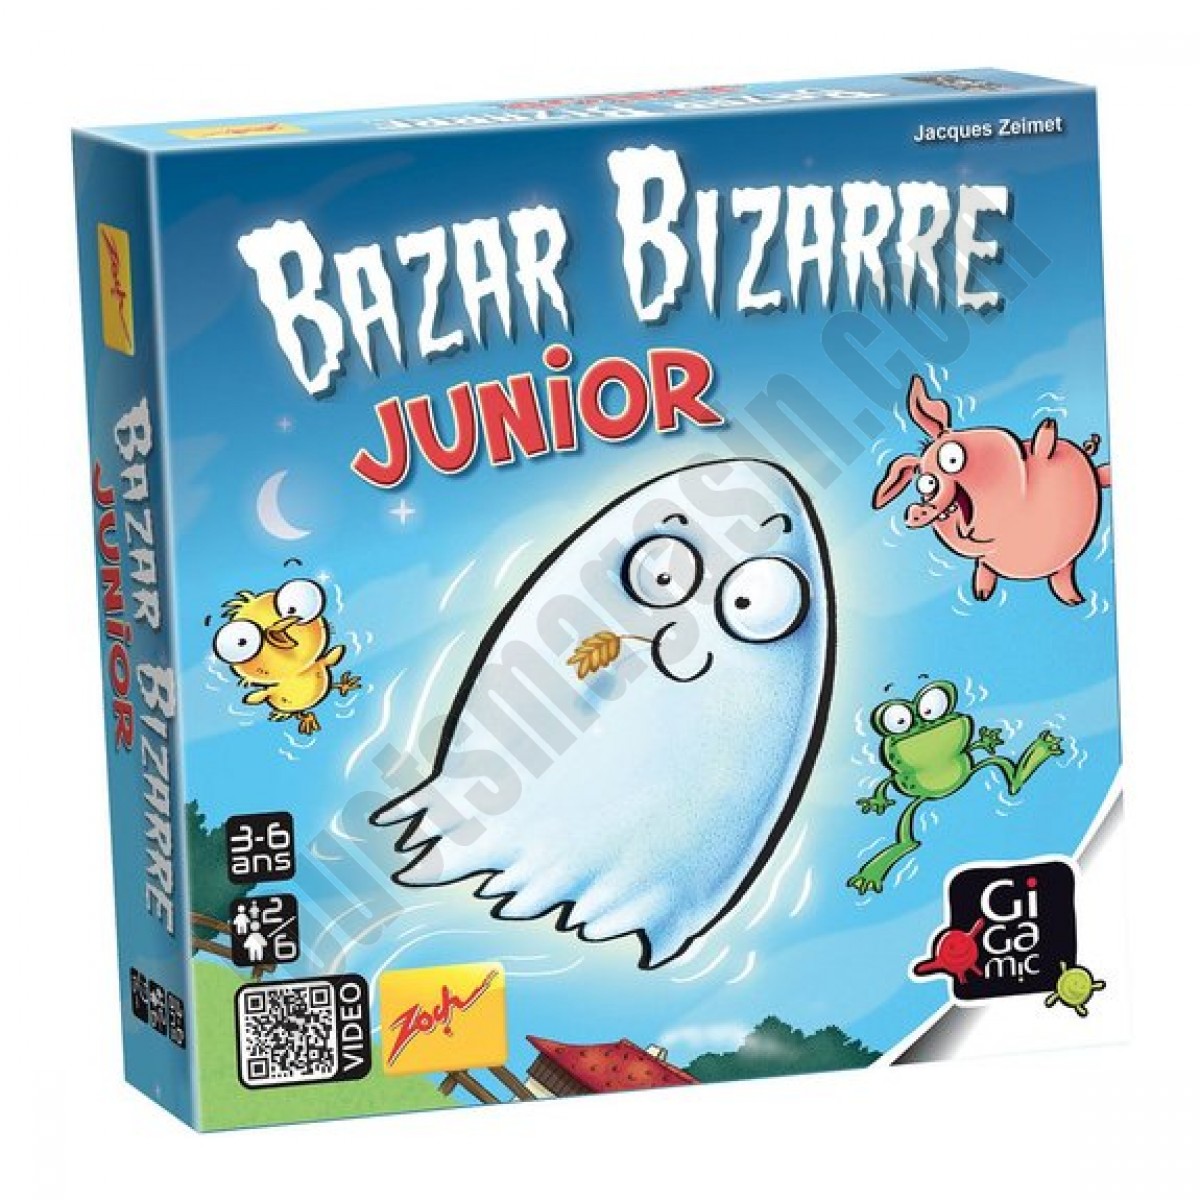 Bazar bizarre junior En promotion - Bazar bizarre junior En promotion